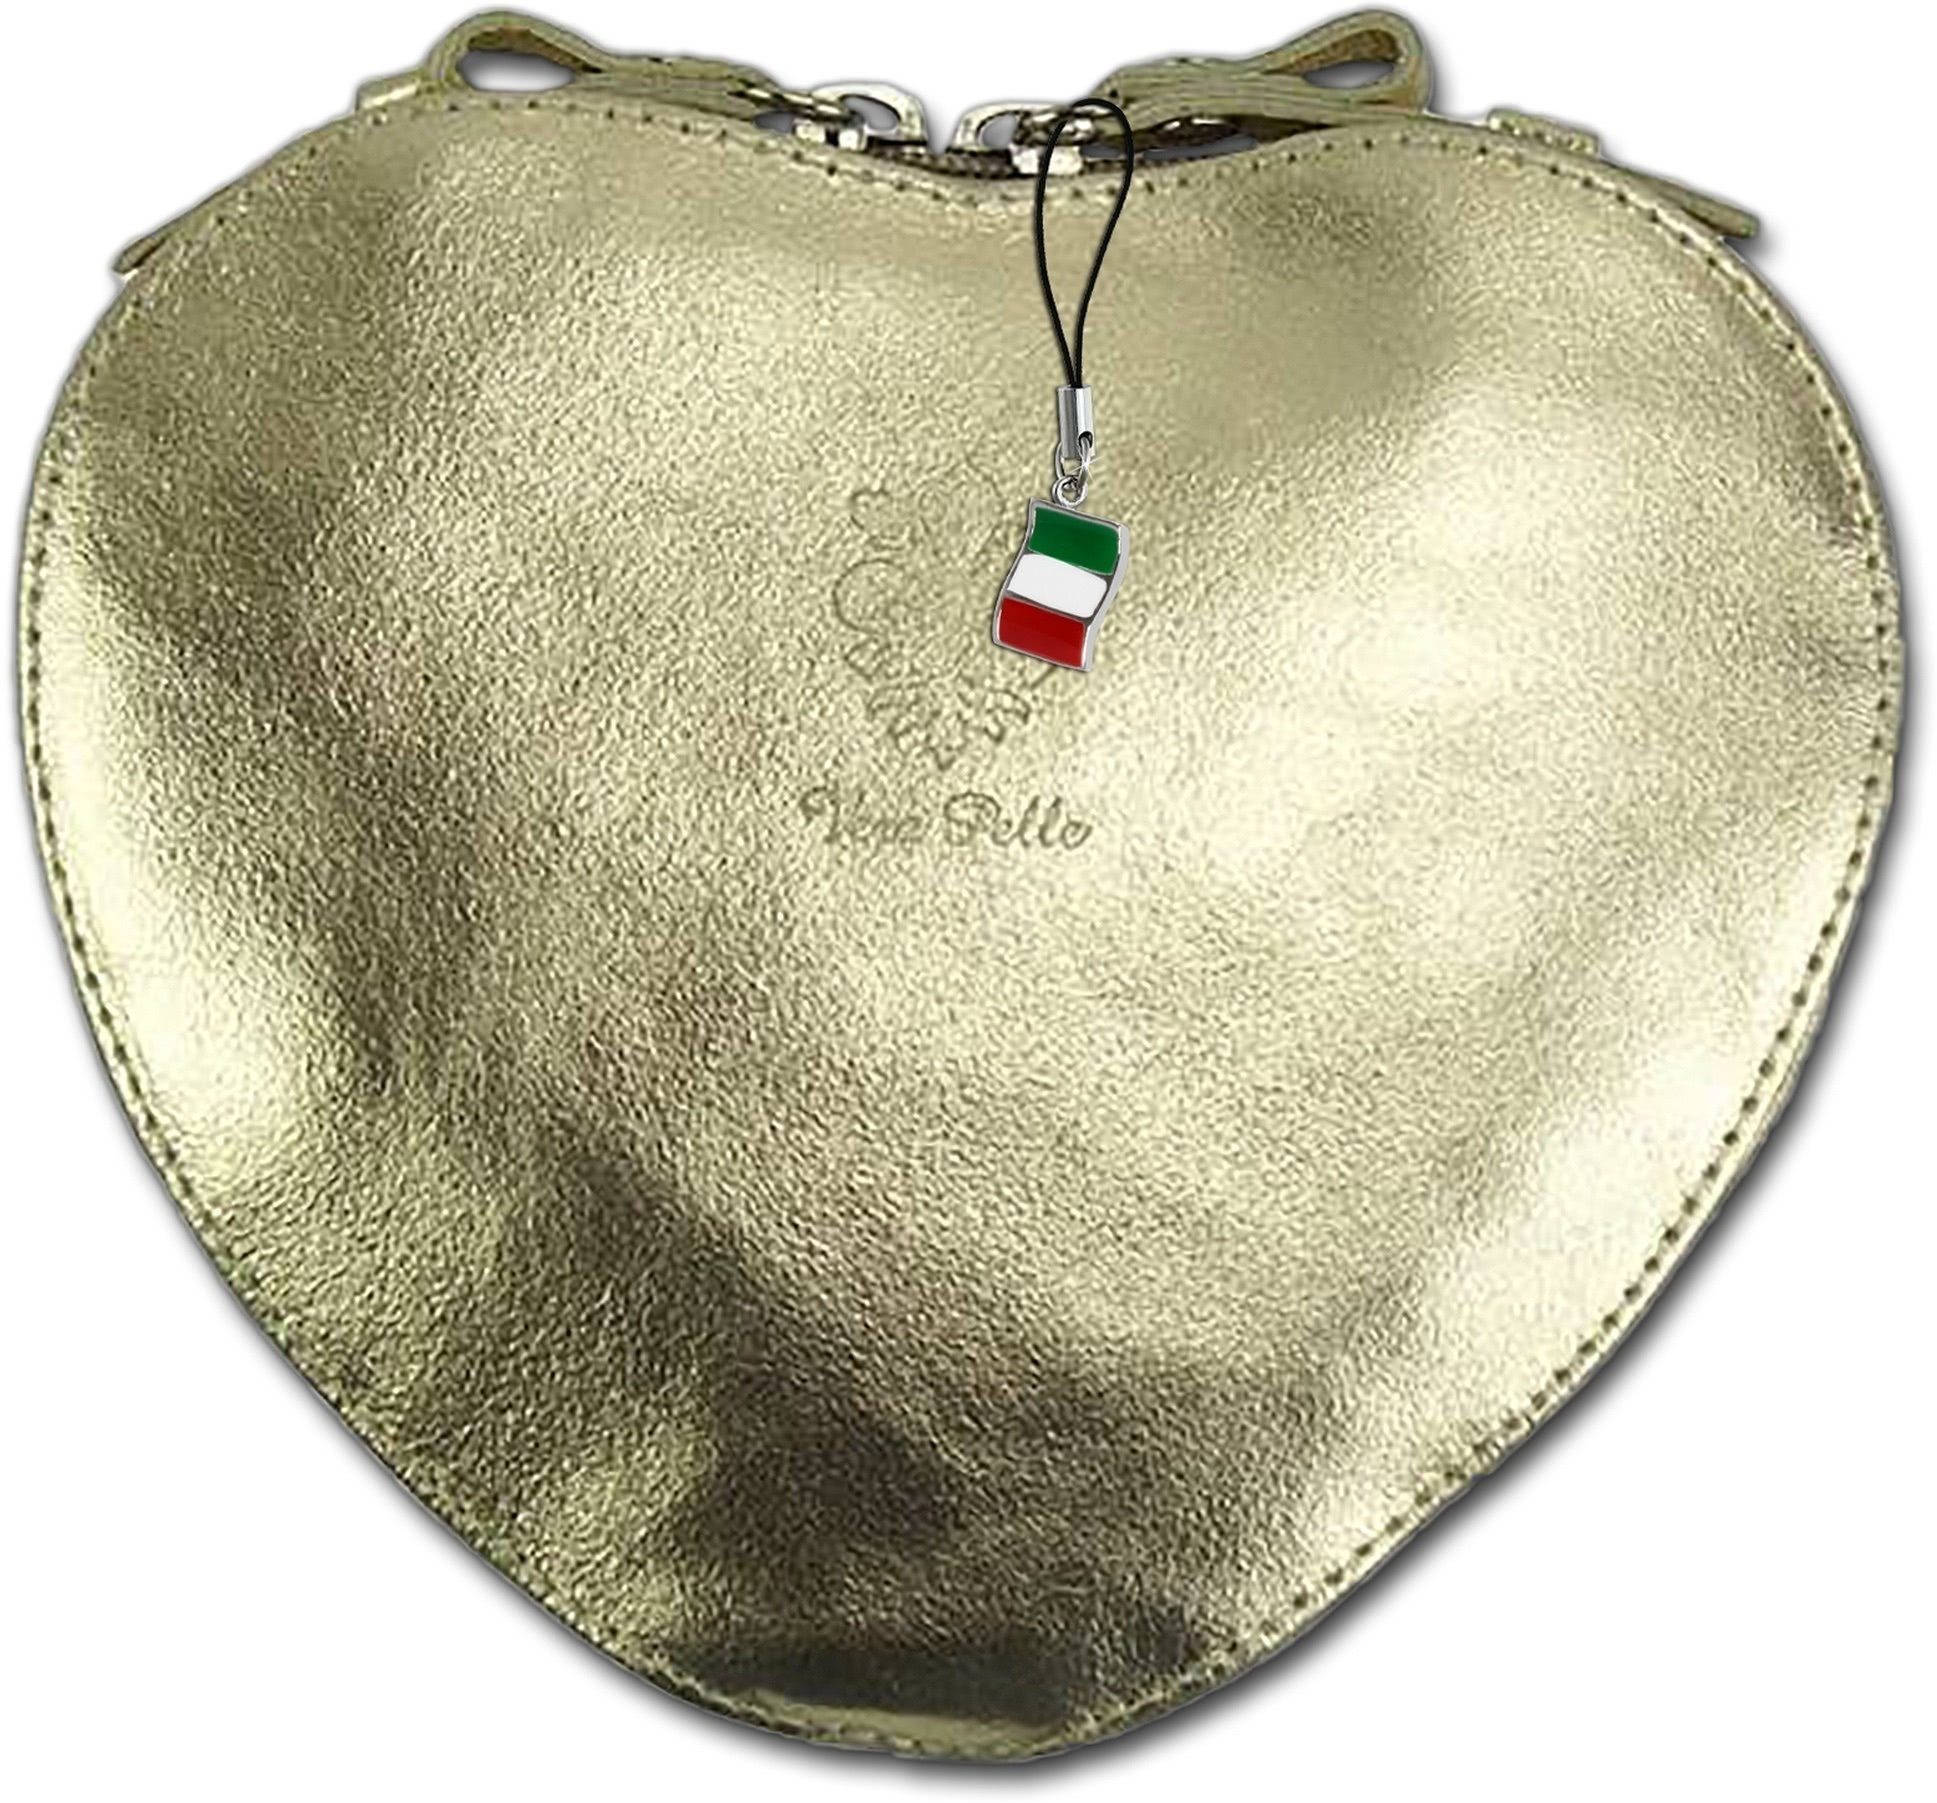 FLORENCE Clutch Florence Heart Bag Damen Handtasche, Damen Tasche Echtleder  gold, Herz, Made-In Italy